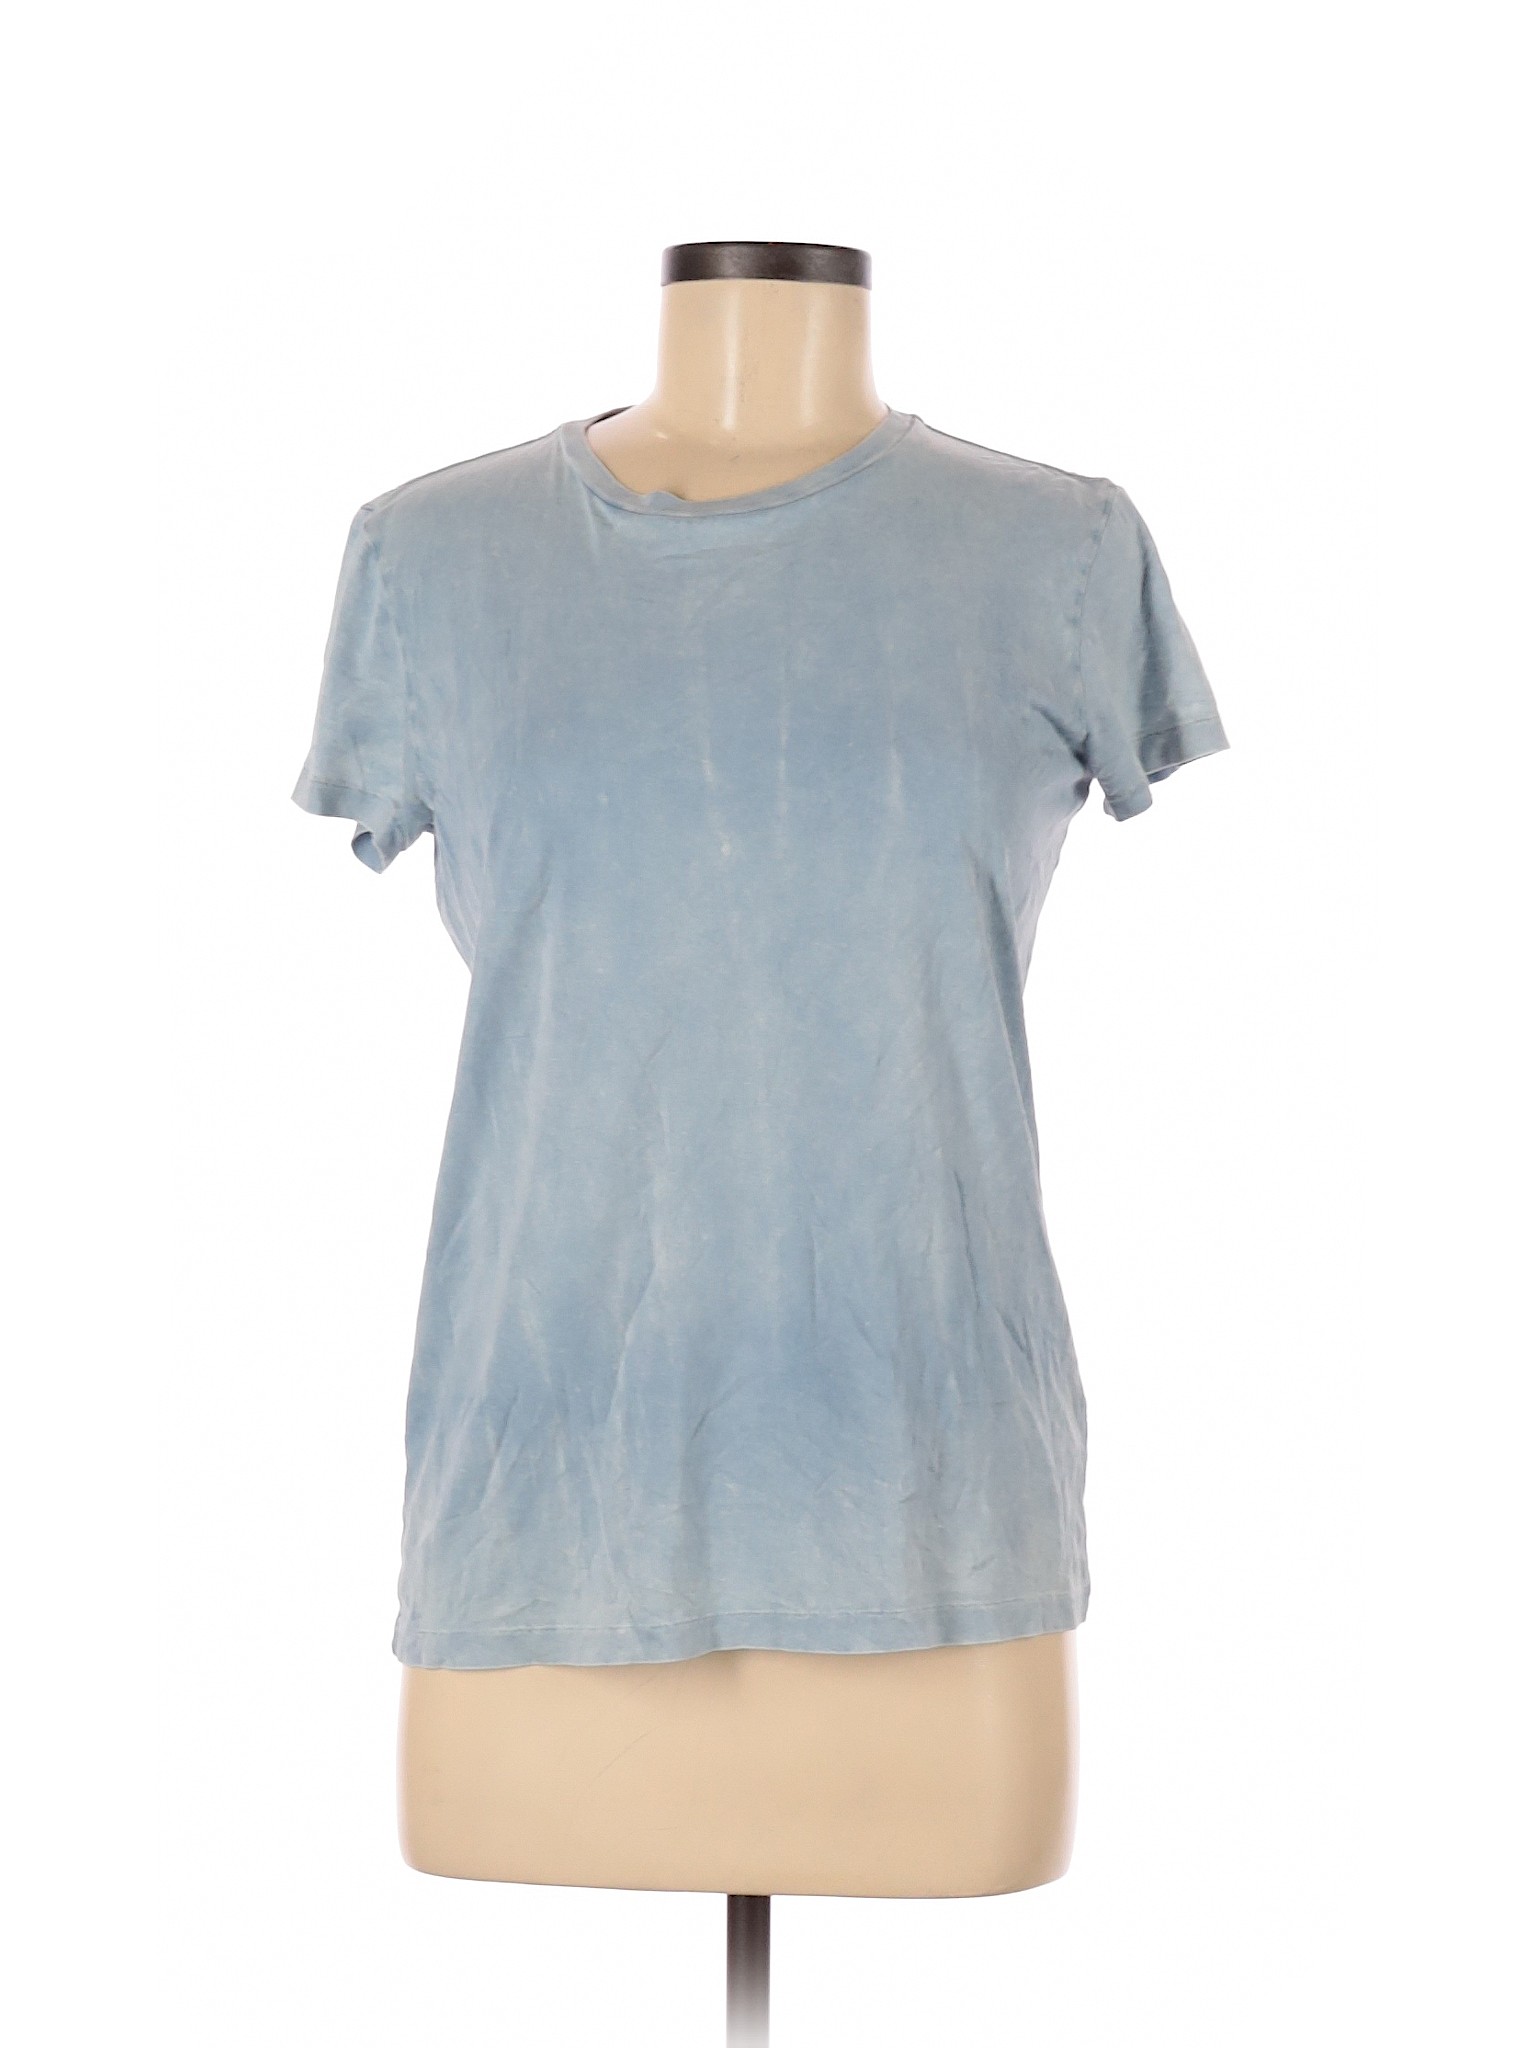 Ralph Lauren Women Blue Short Sleeve T-Shirt M | eBay